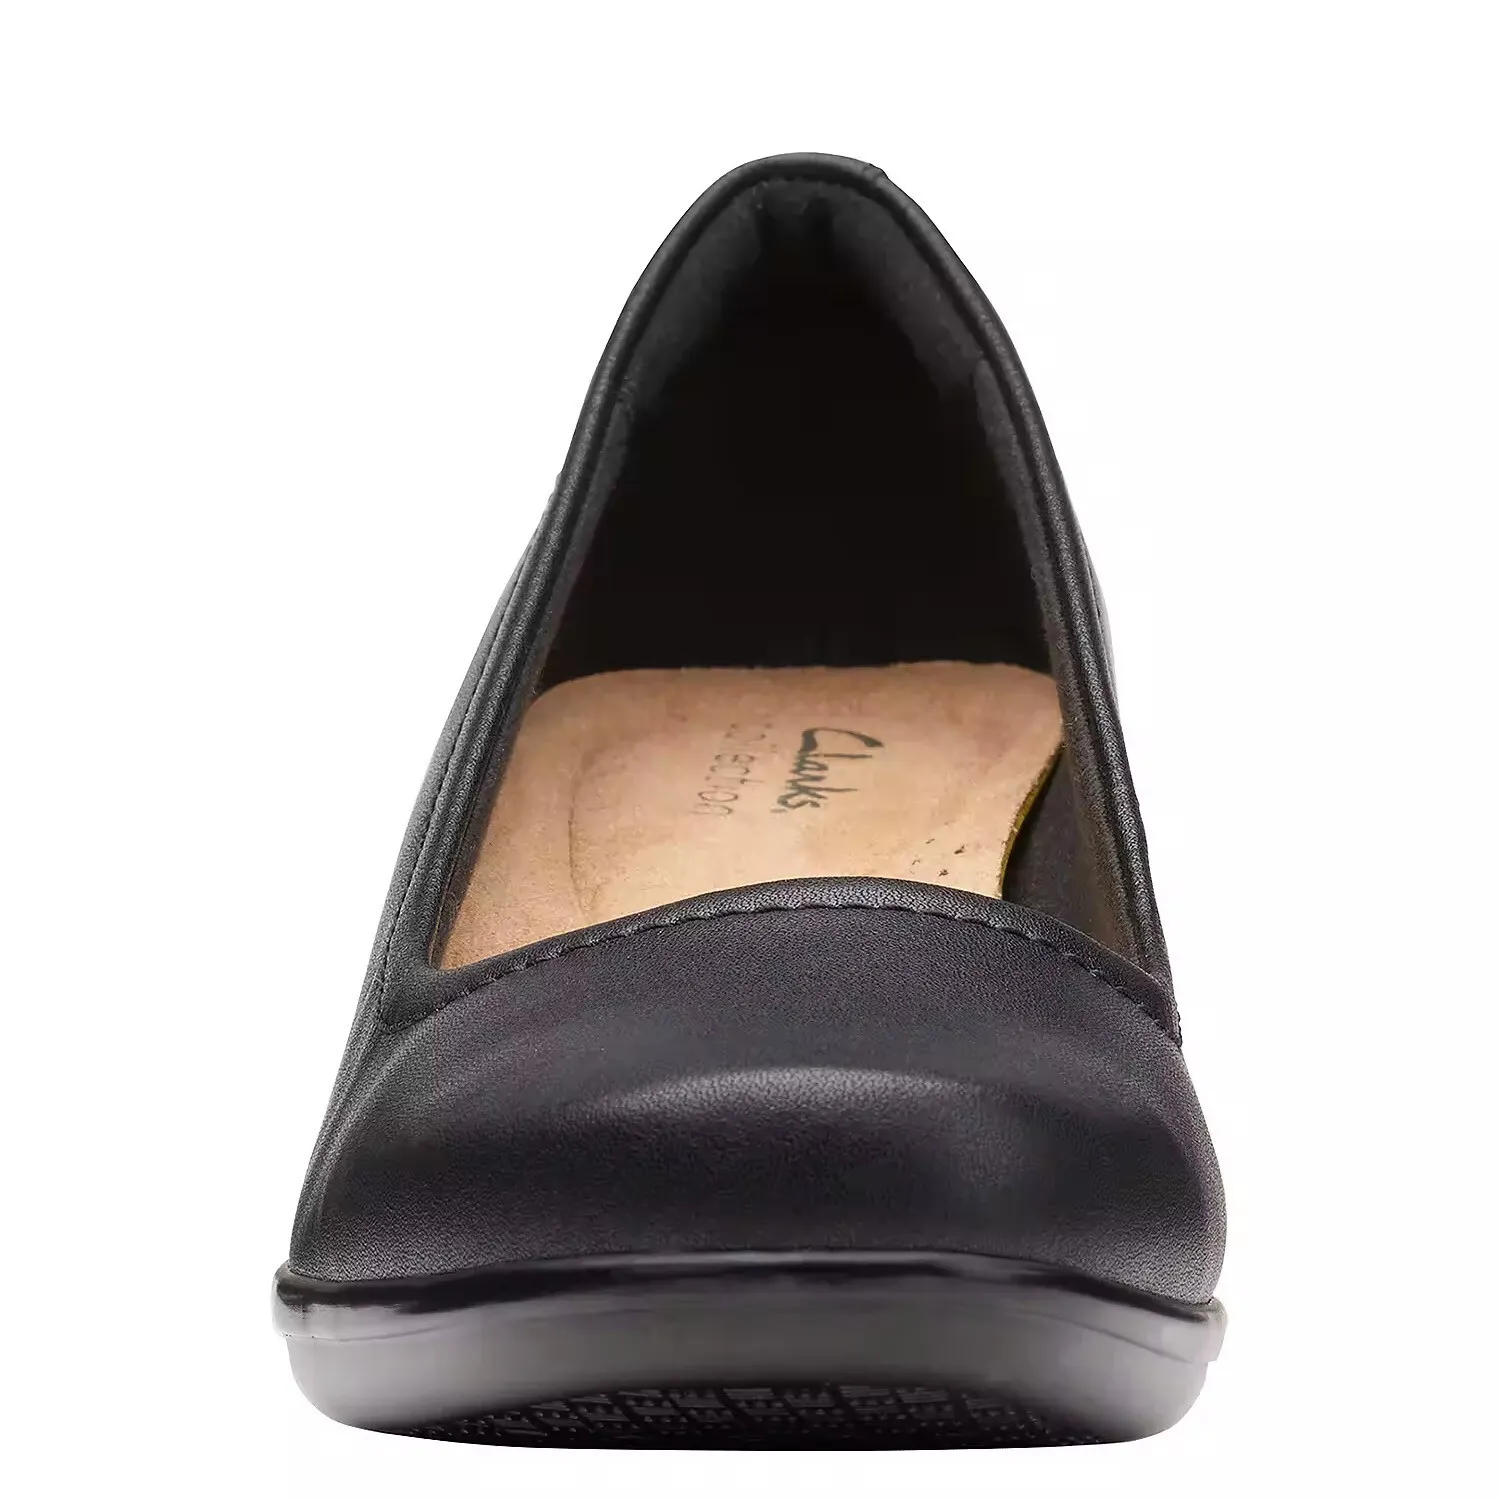 Женские туфли-лодочки Clarks, черные, цвет черный, размер 39 - фото 5